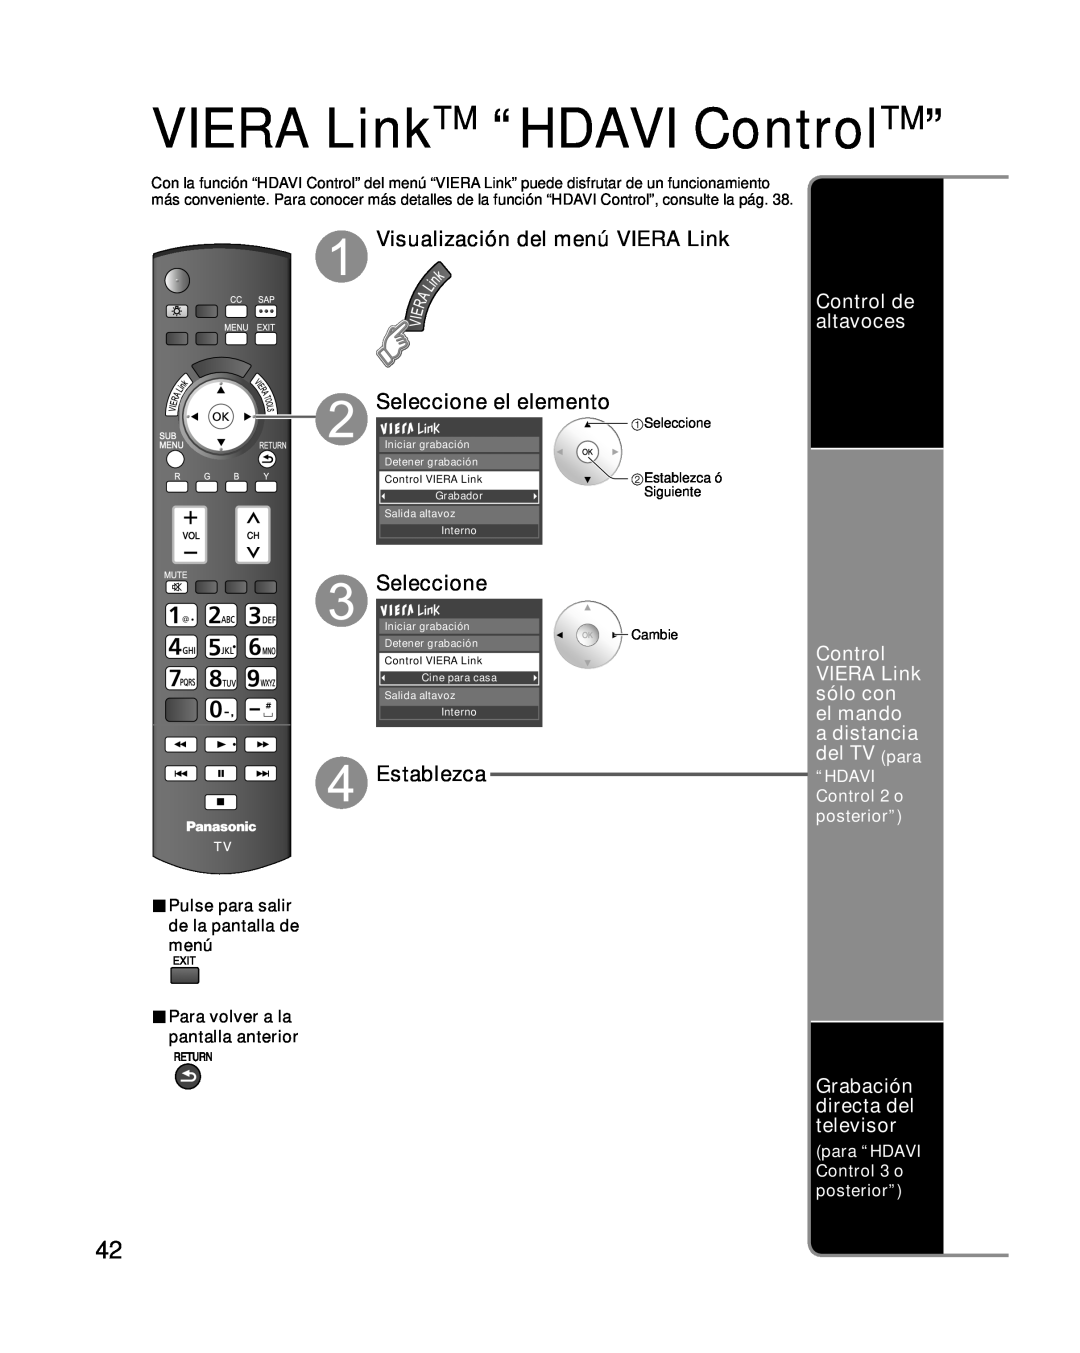 Panasonic TC-P54G10 Visualización del menú VIERA Link, Seleccione, Control de altavoces, sólo con, el mando, a distancia 